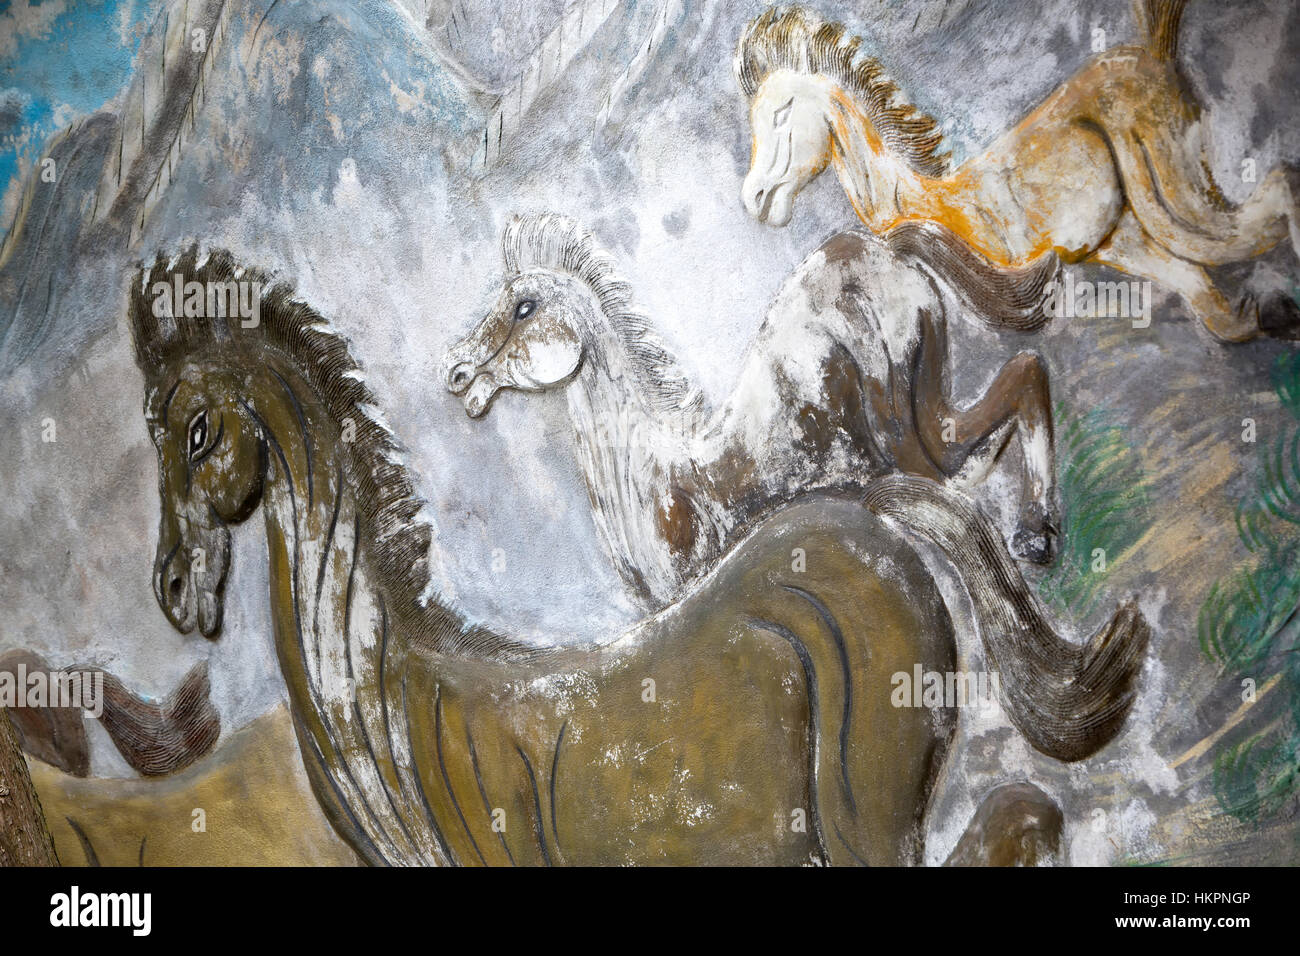 Gemälde von galoppierenden Pferden, Bergseite im Hintergrund. Stockfoto